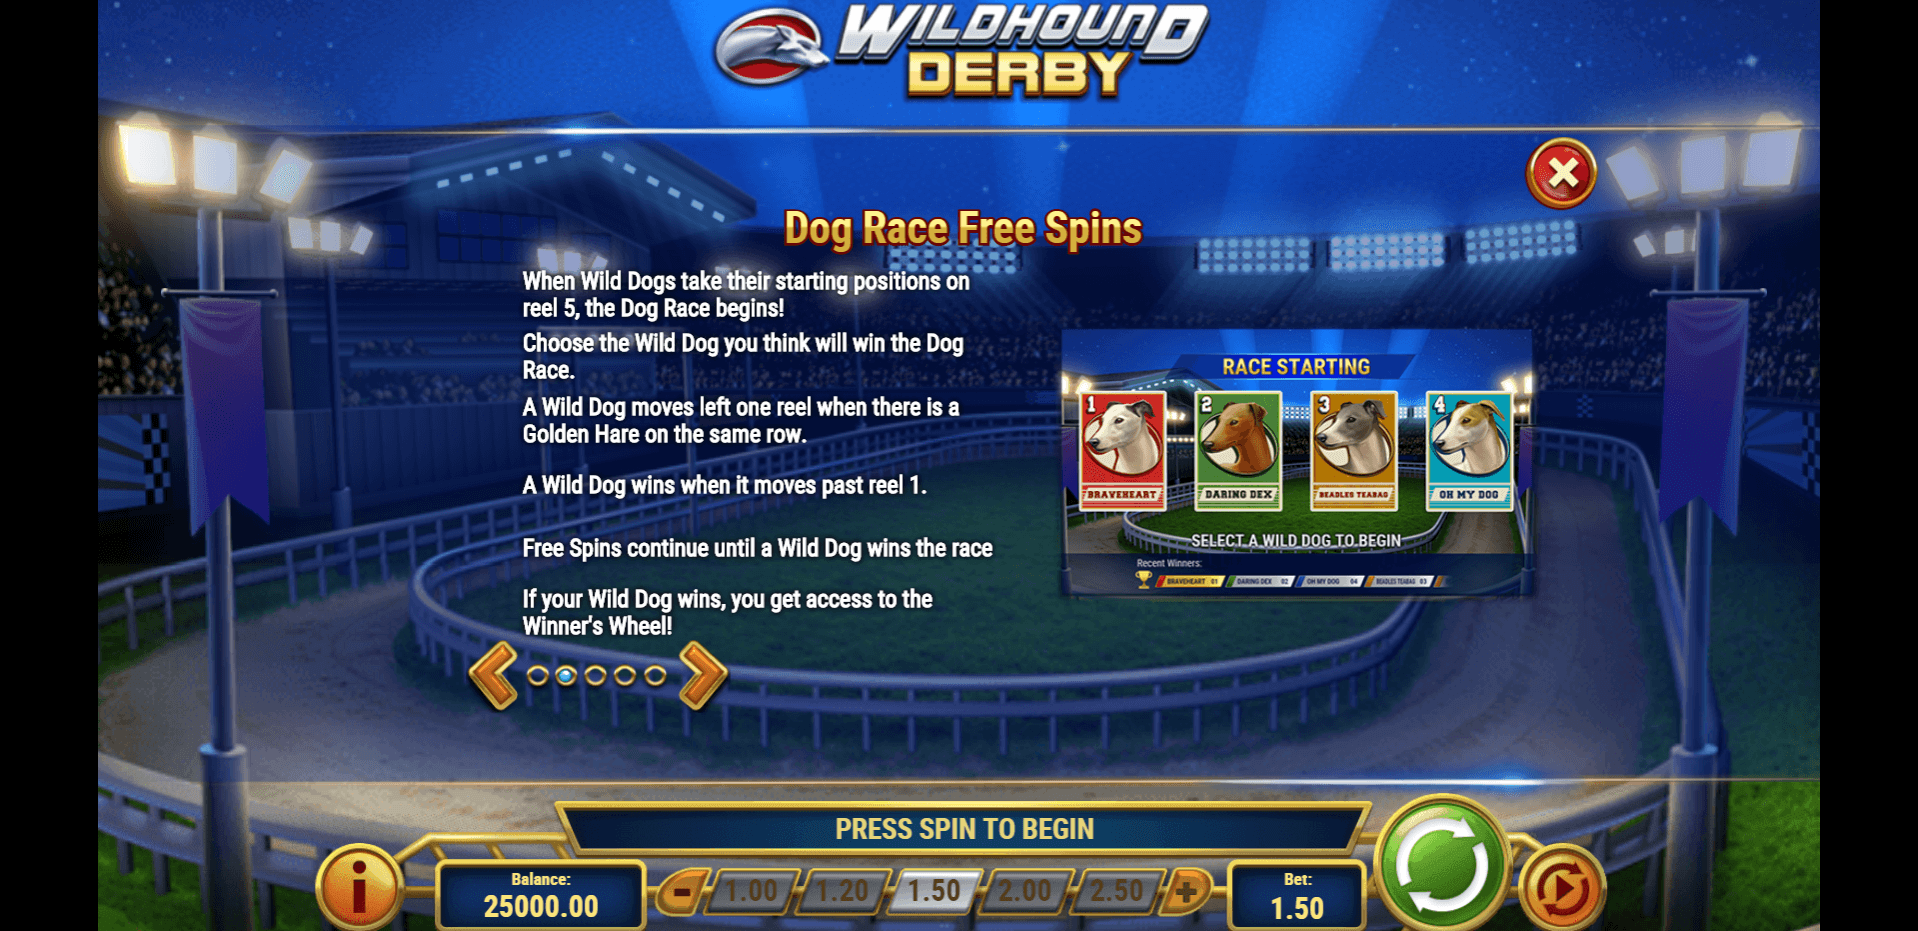 wildhound derby slot machine detail image 1